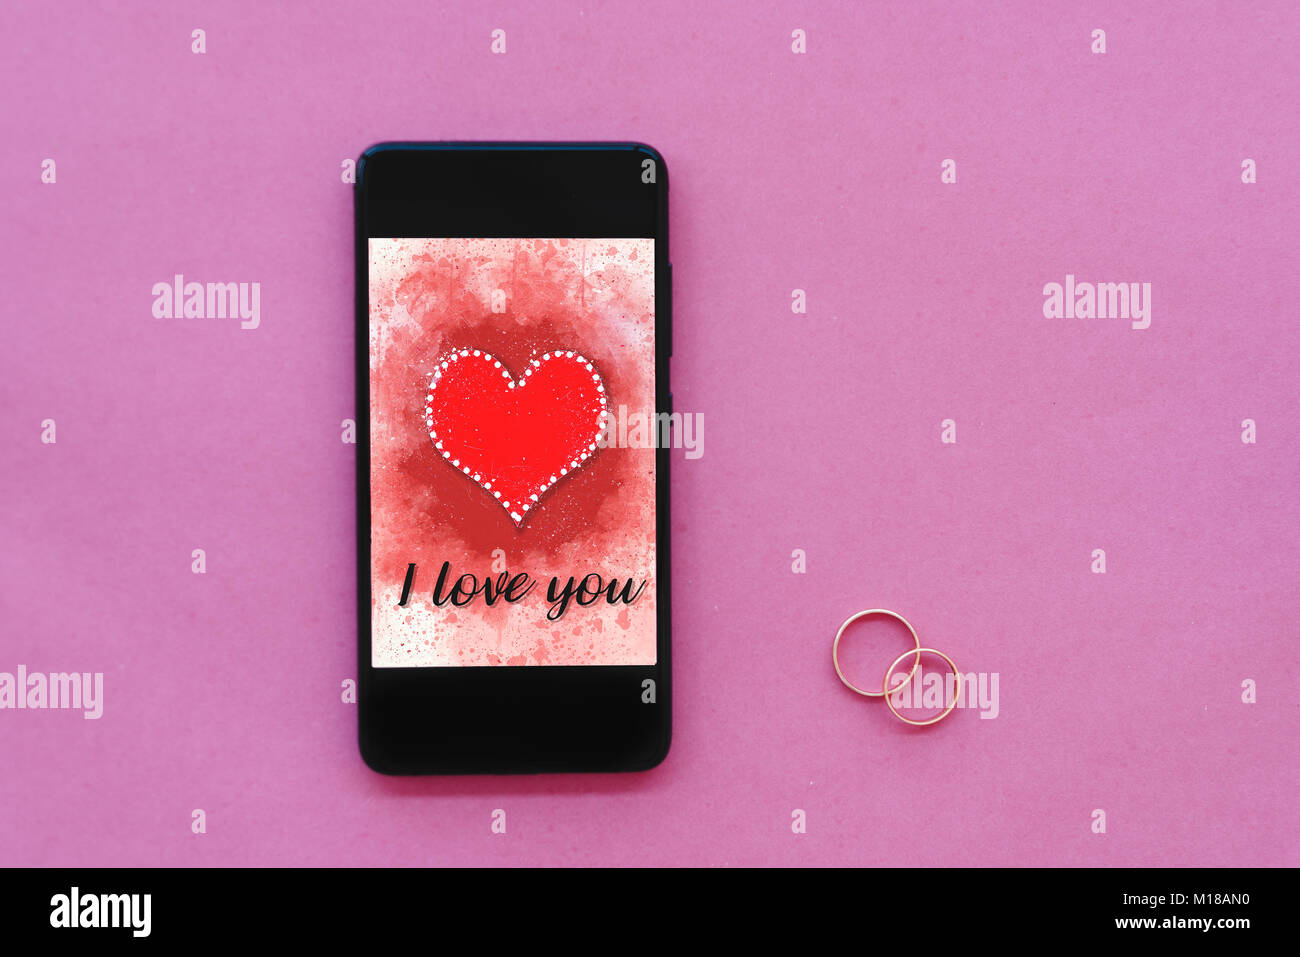 Día de San Valentín venta fondo con corazón ilustración con las palabras I Love You en la pantalla del smartphone boceto sobre fondo de color rosa con dos anillos de boda Foto de stock